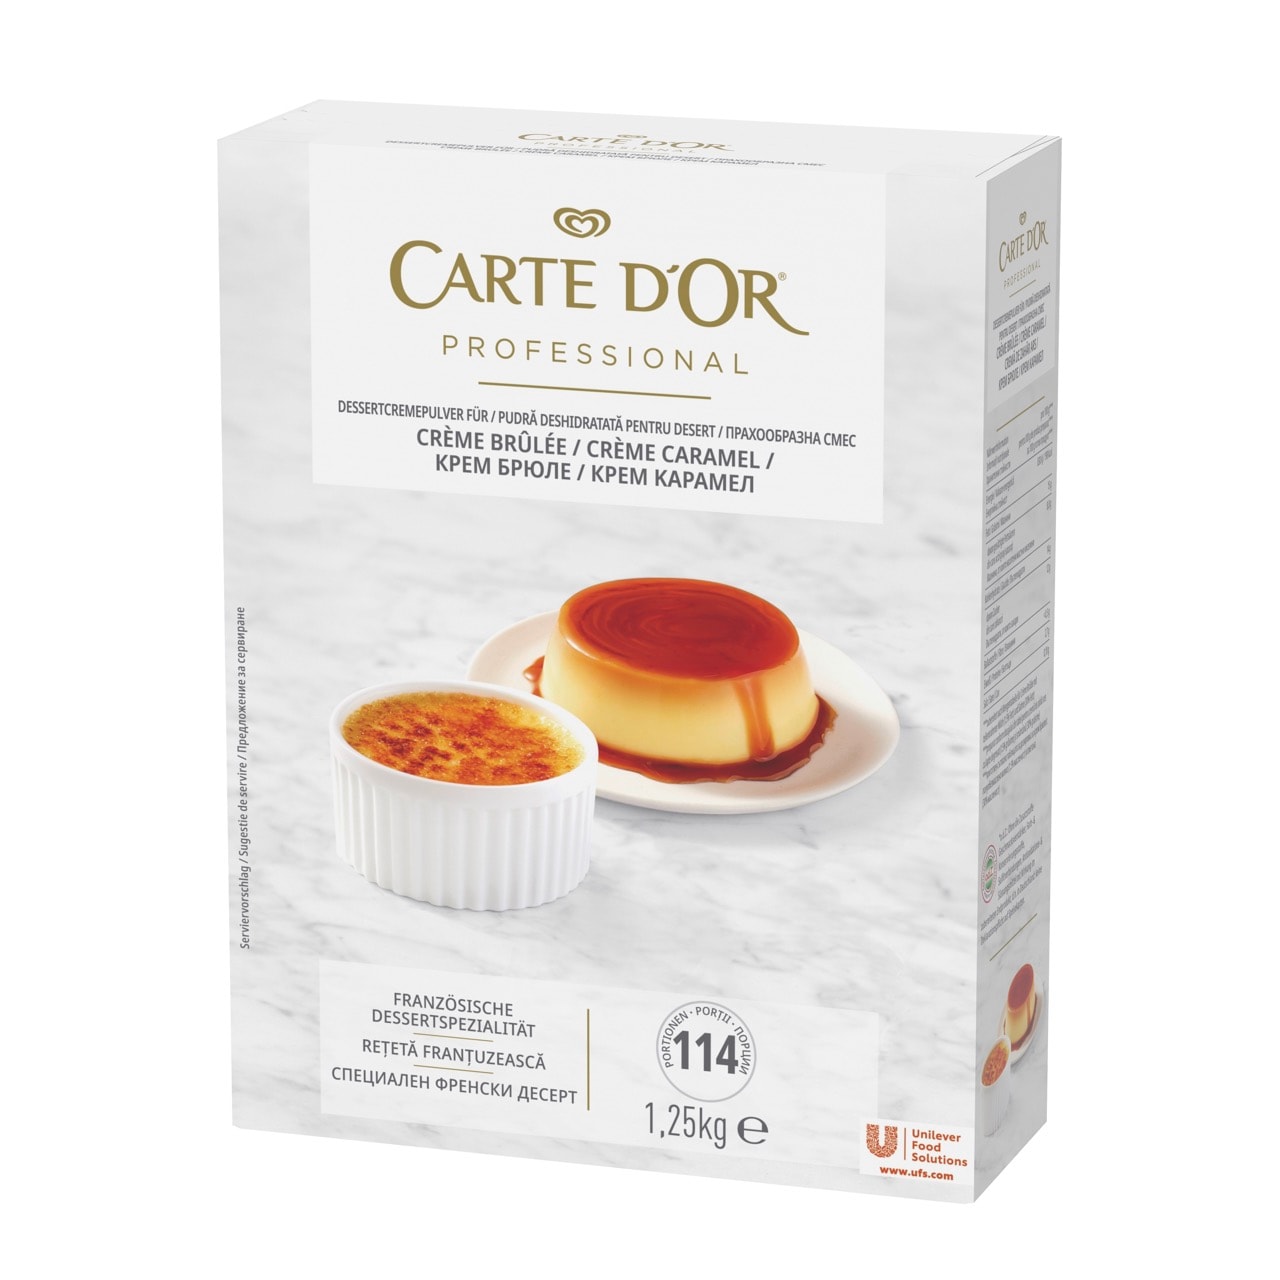 Carte D'Or Crema Caramel